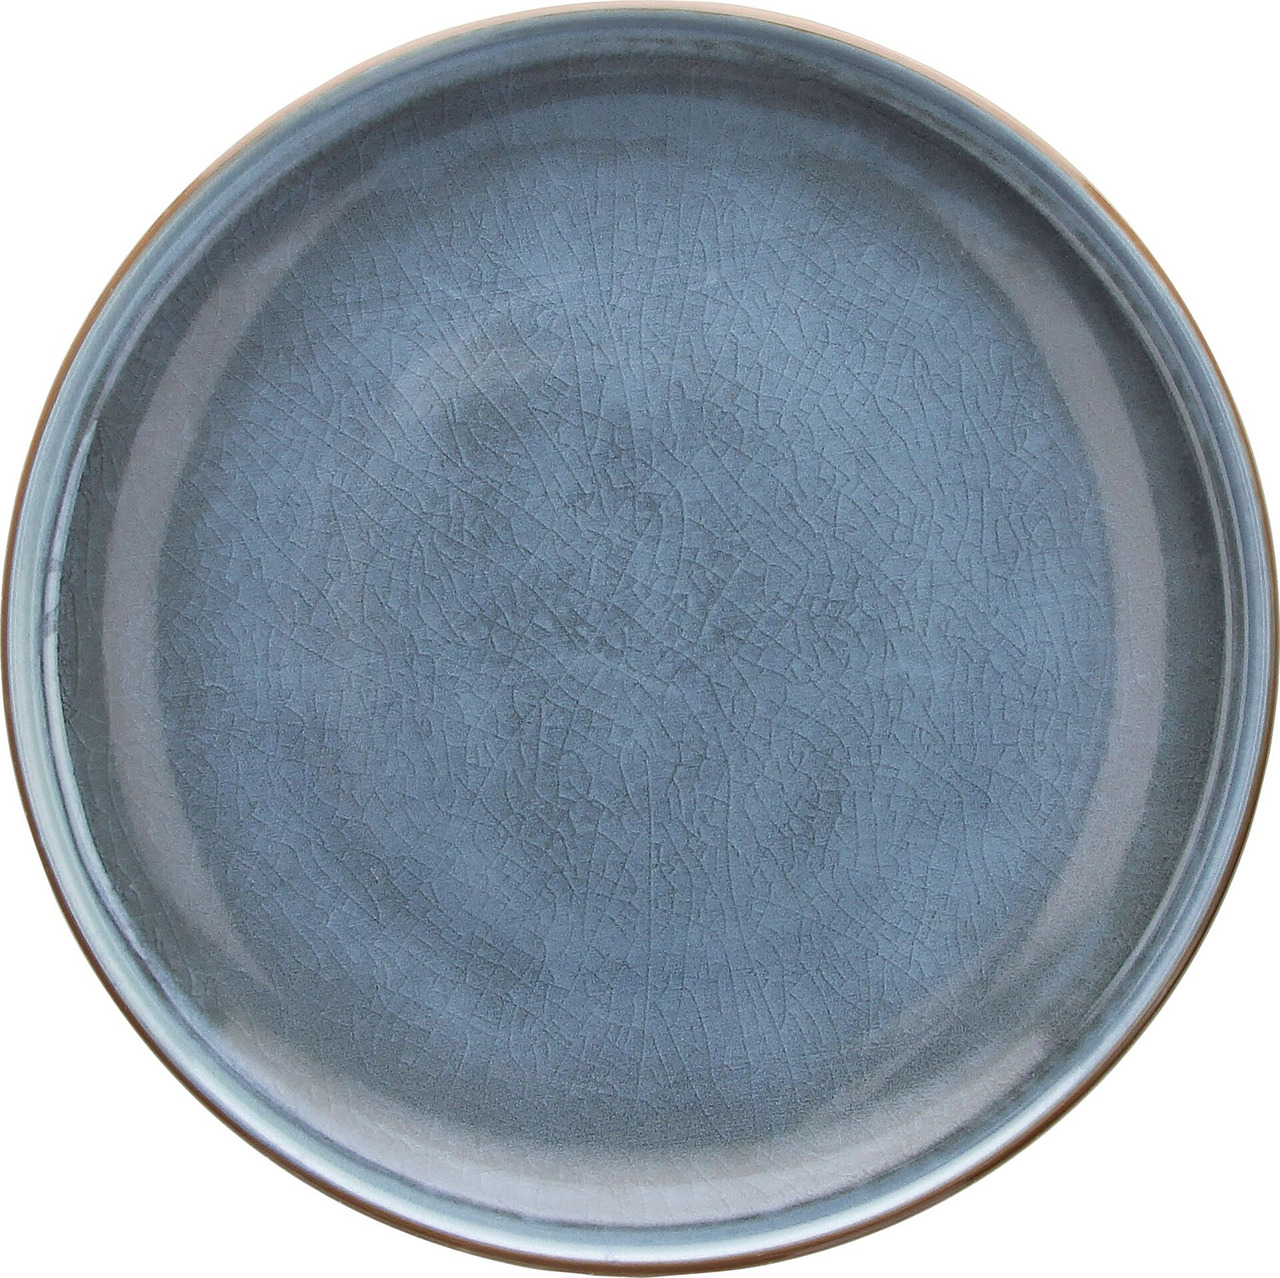 Porzellanserie "Terra" Teller flach Ø28,5 cm blau